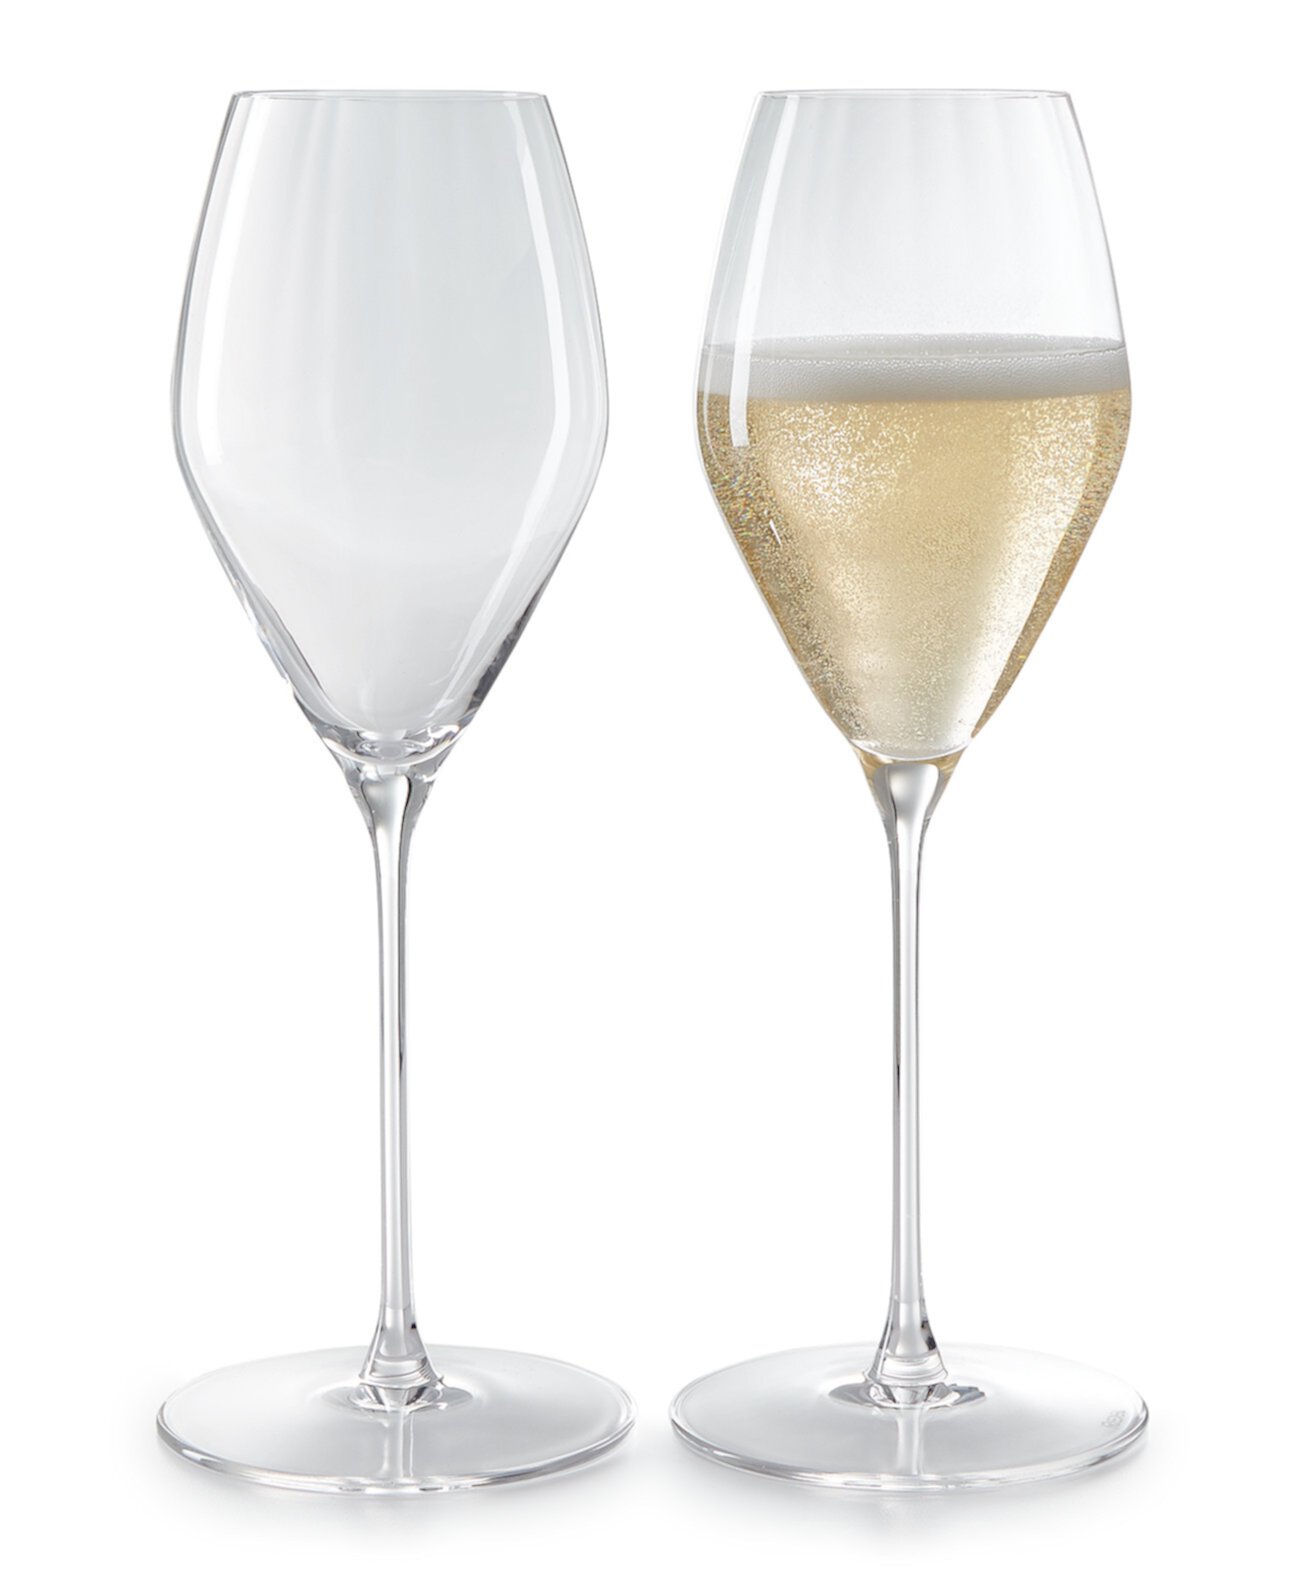 Бокалы для шампанского Performance, набор из 2 шт. Riedel